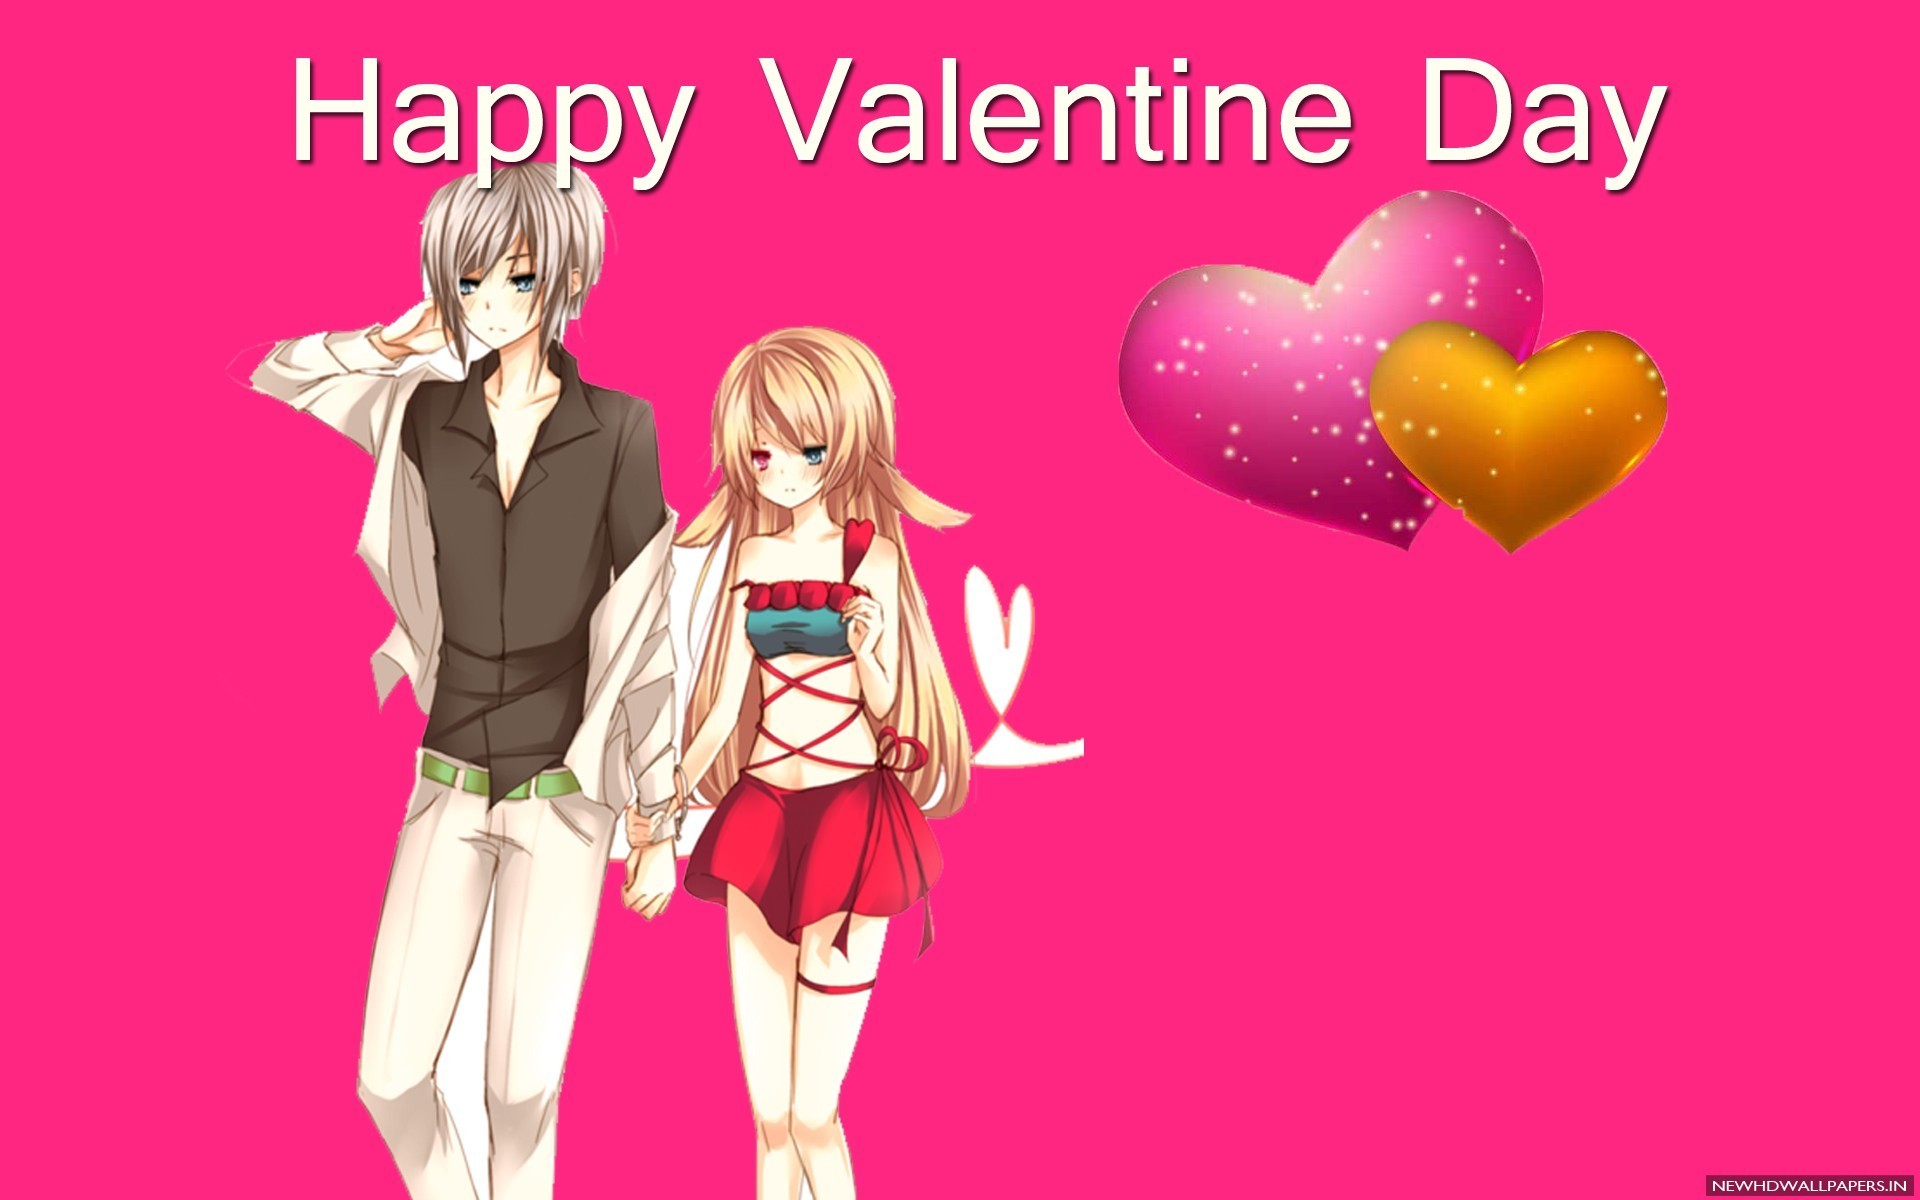 Happy Valentine Day Anime Couple 2015 Photo